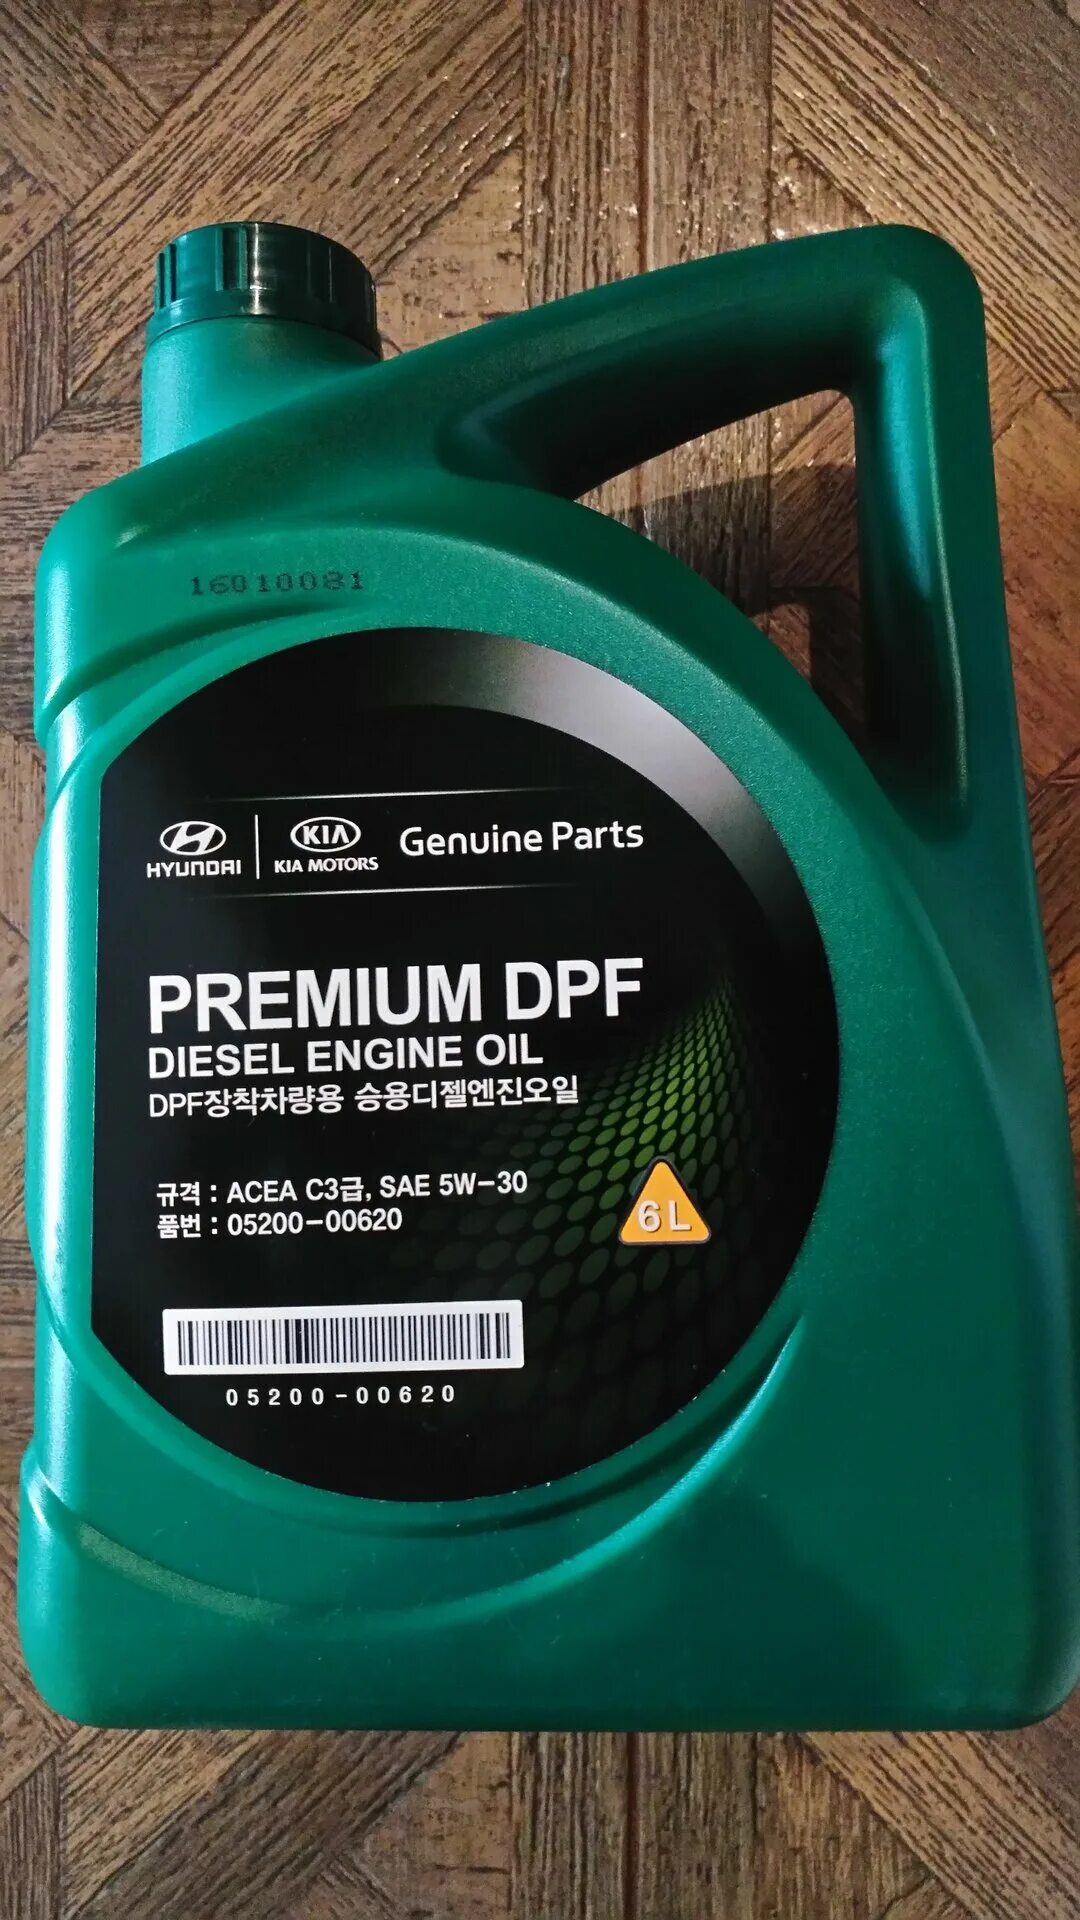 Моторное масло premium dpf diesel. Premium DPF Diesel 5w-30. Масло mobis Premium DPF Diesel 5w-30. Hyundai Kia Premium DPF 5w-30 6 л. Mobis Premium DPF Diesel 5w-30, 6 n.